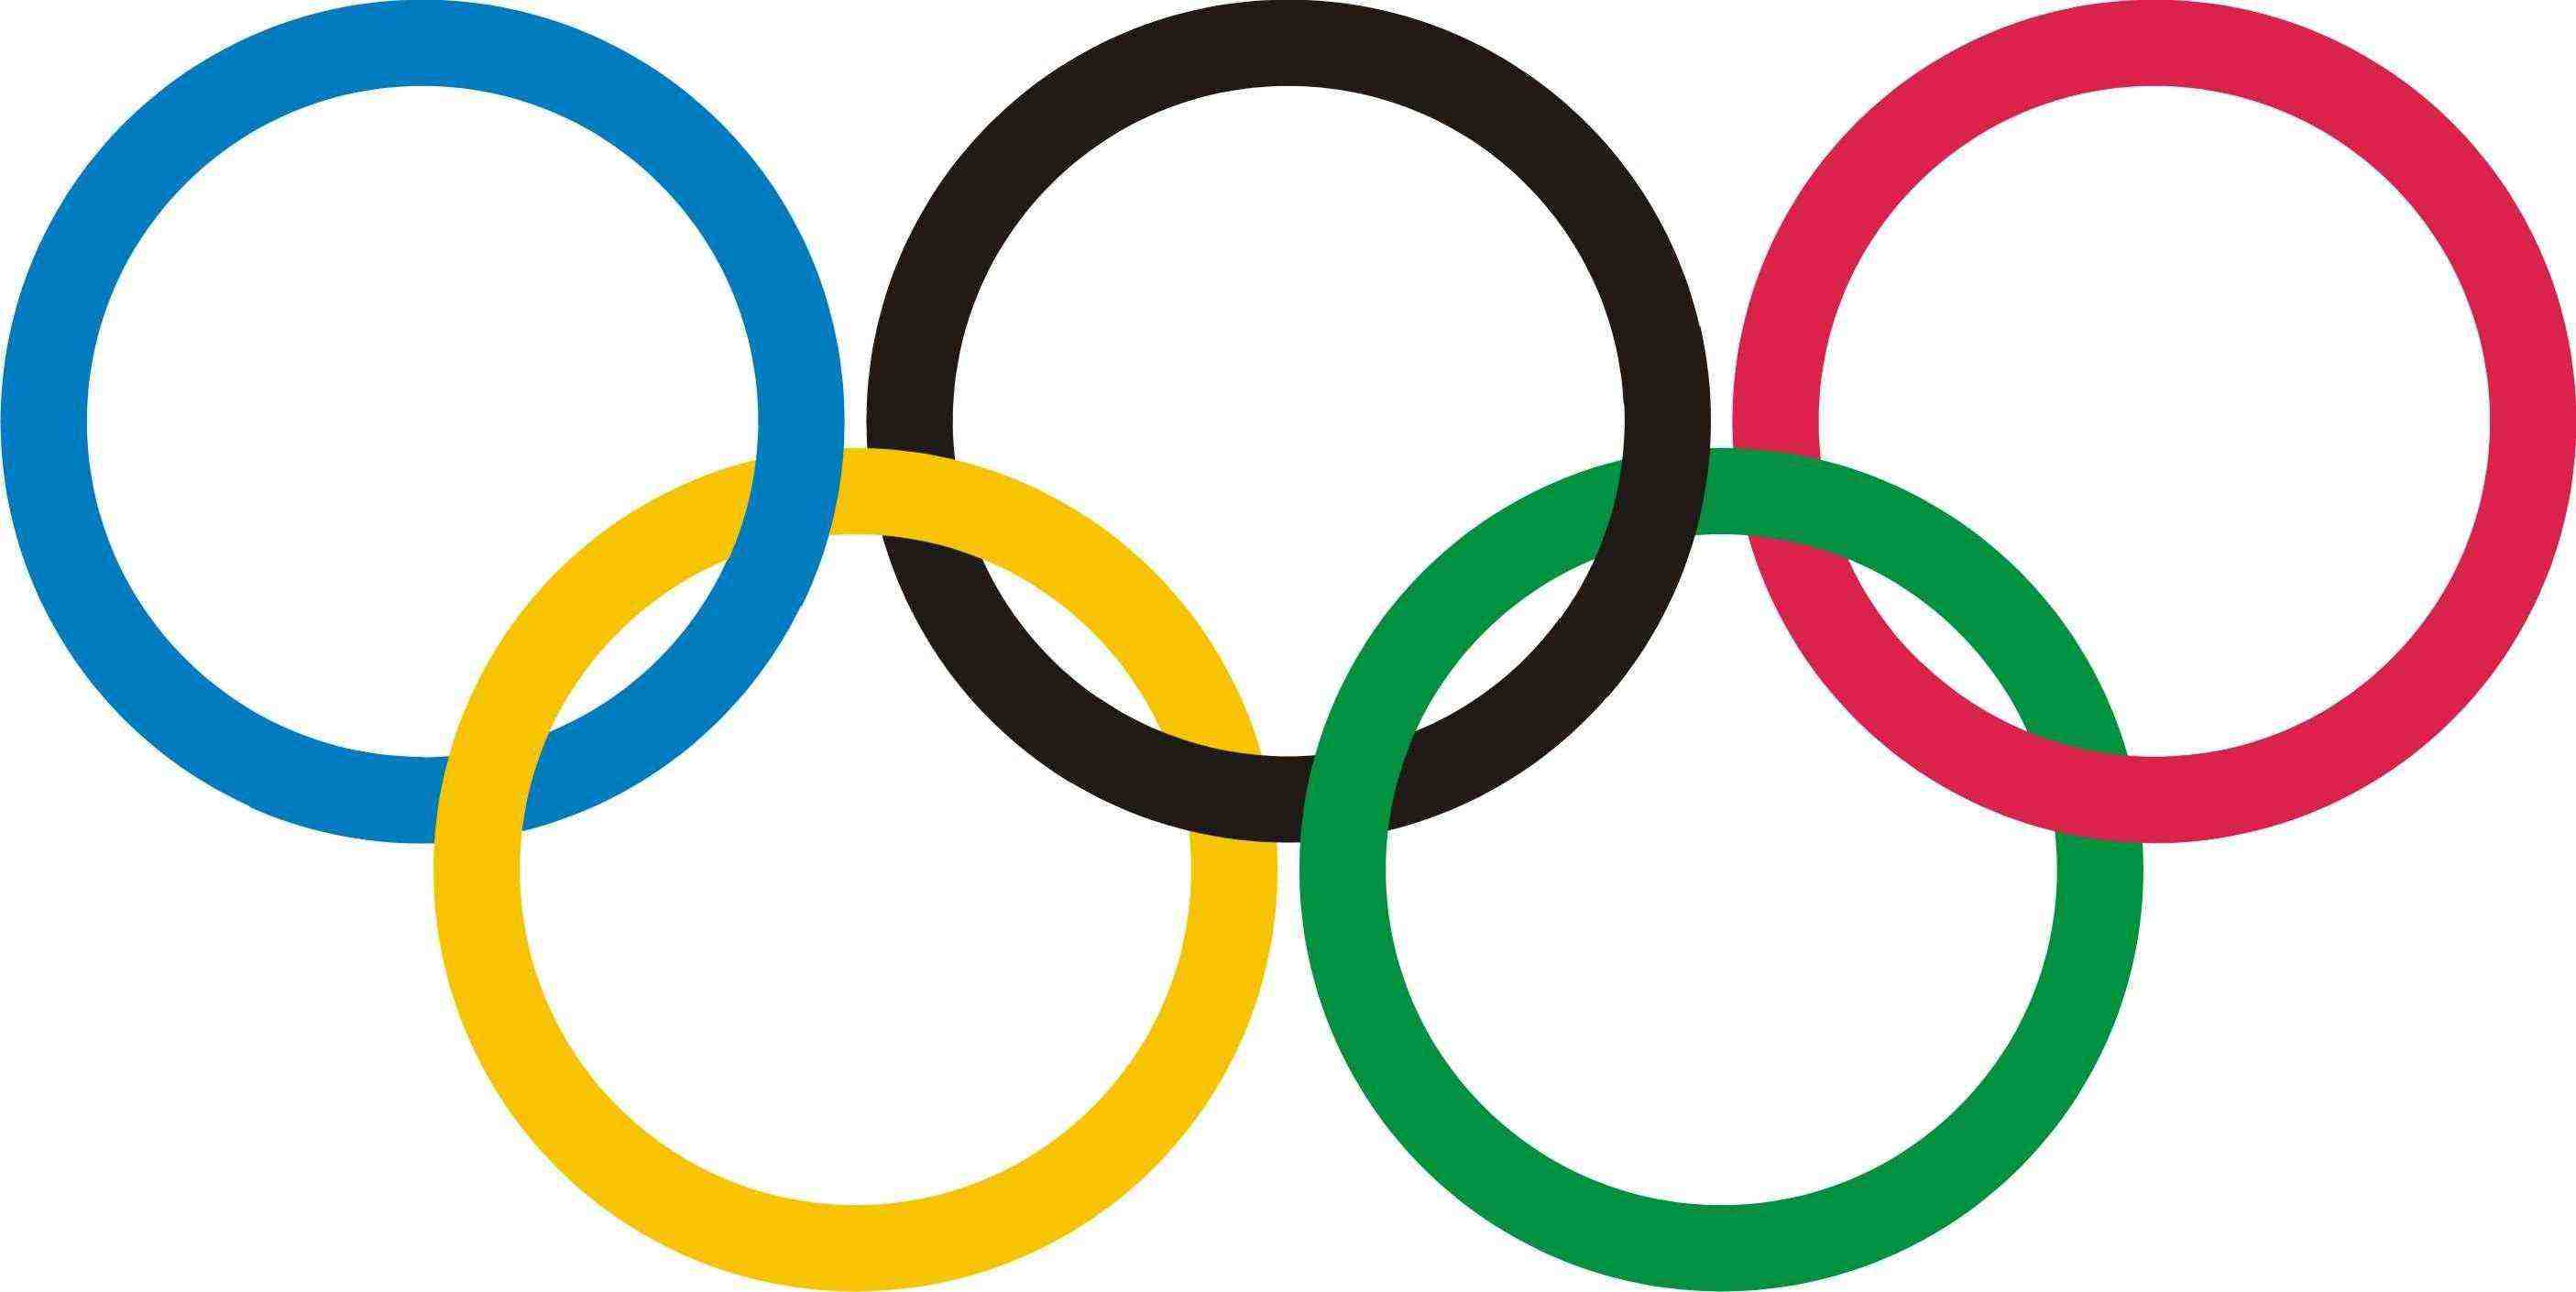 Легкоатлетическая программа Олимпийских Игр 2016 года